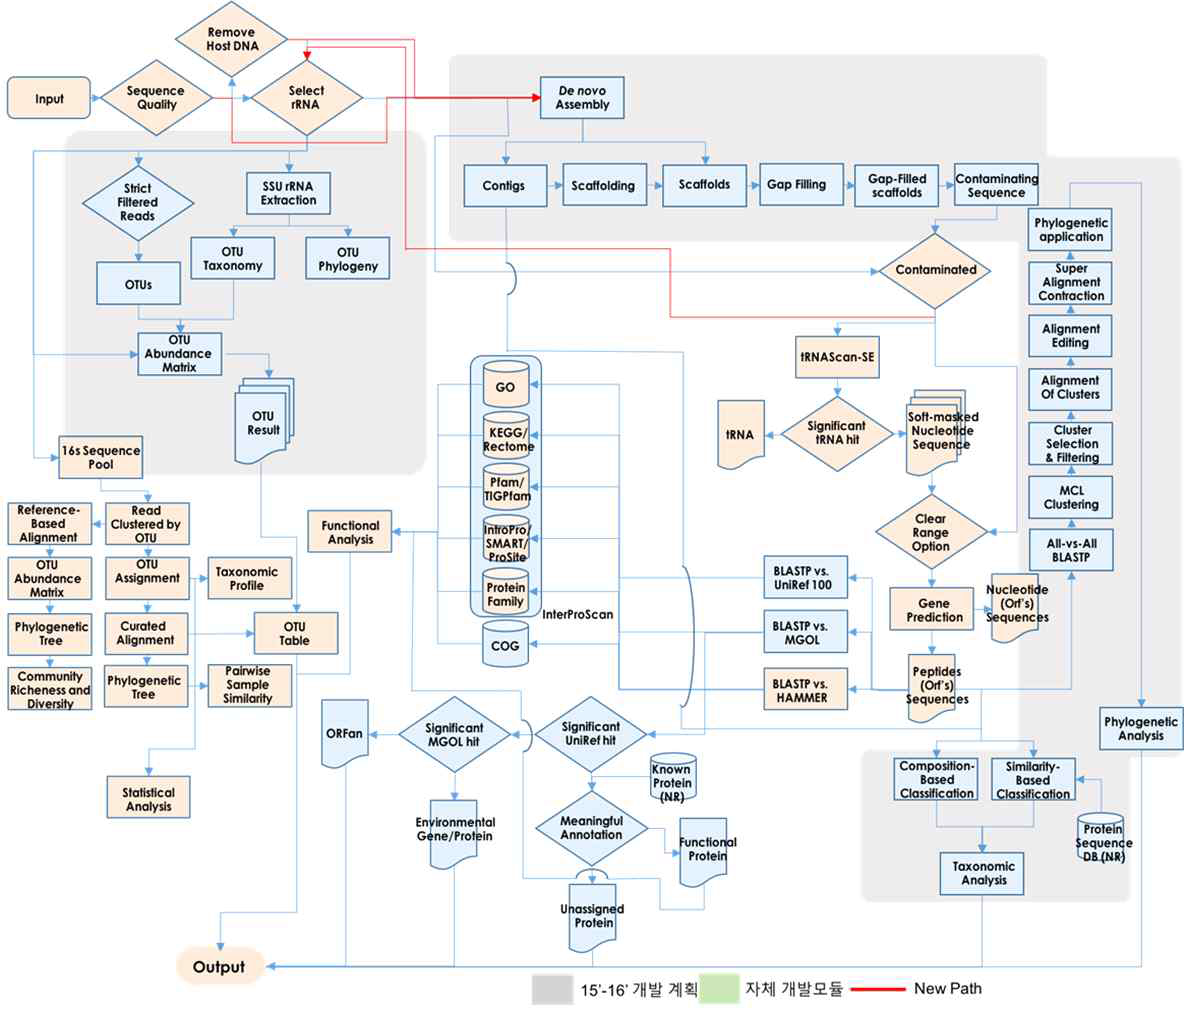 전 메타게놈 분석을 위한 모듈 구성 계획 및 workflow